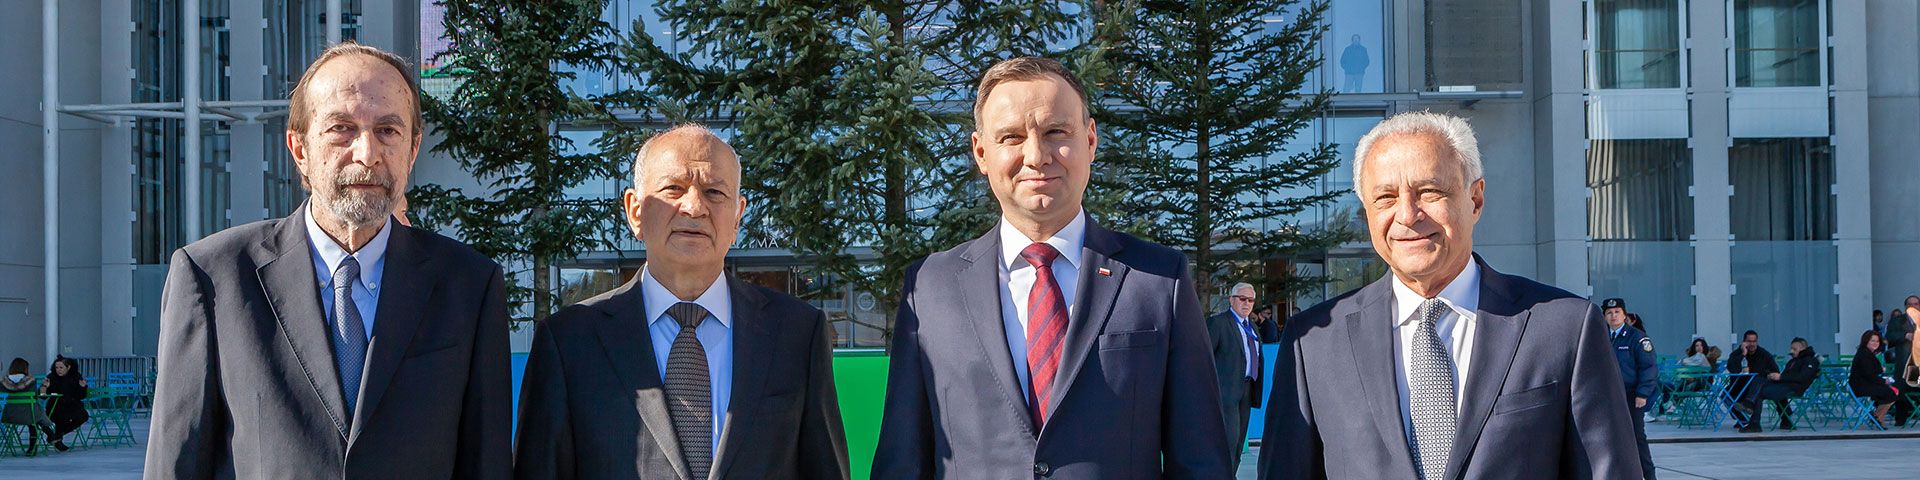 Στιγμιότυπα από την επίσκεψη του Προέδρου της Πολωνίας Andrzej Duda και του Υπουργού Οικονομίας και Ανάπτυξης Δημήτρη Παπαδημητρίου στο ΚΠΙΣΝ - Εικόνα